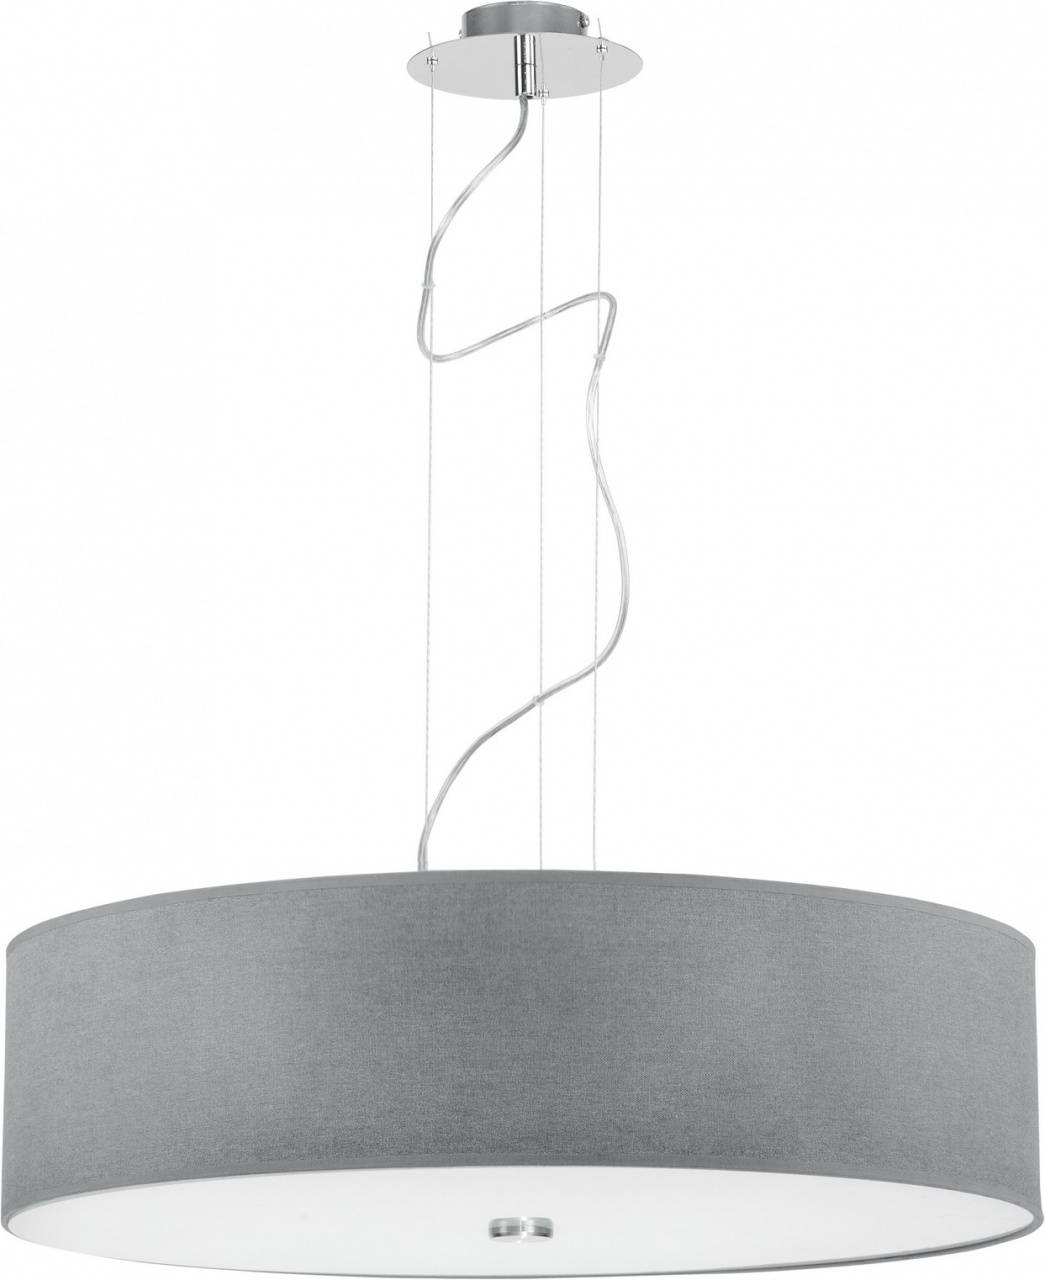 Подвесной светильник Nowodvorski Viviane 6773, диаметр 64 см, хром/серый